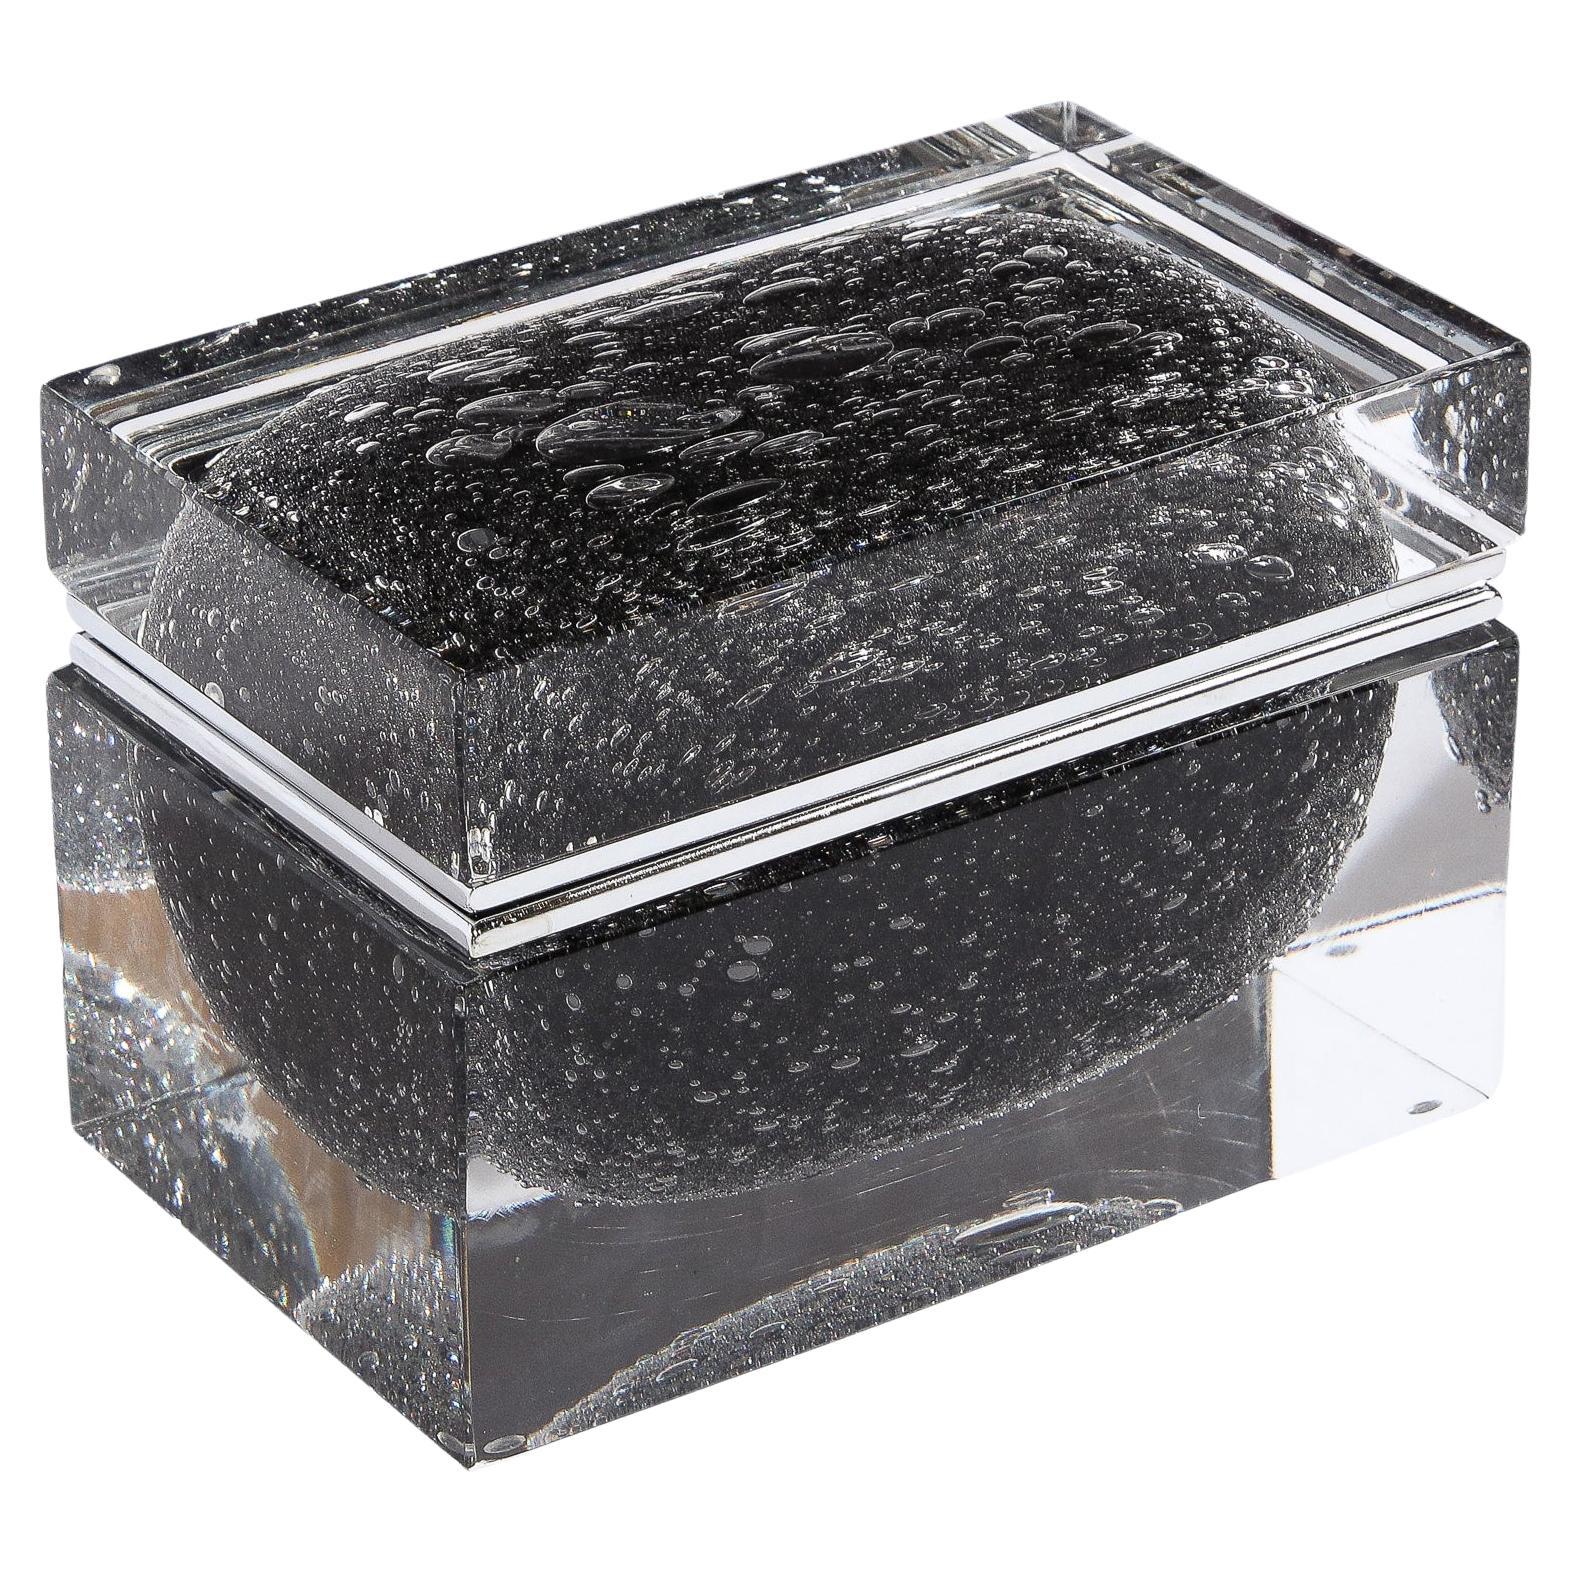 Hand Blown Murano Glass Box in Onyx Black with Murine Detailing